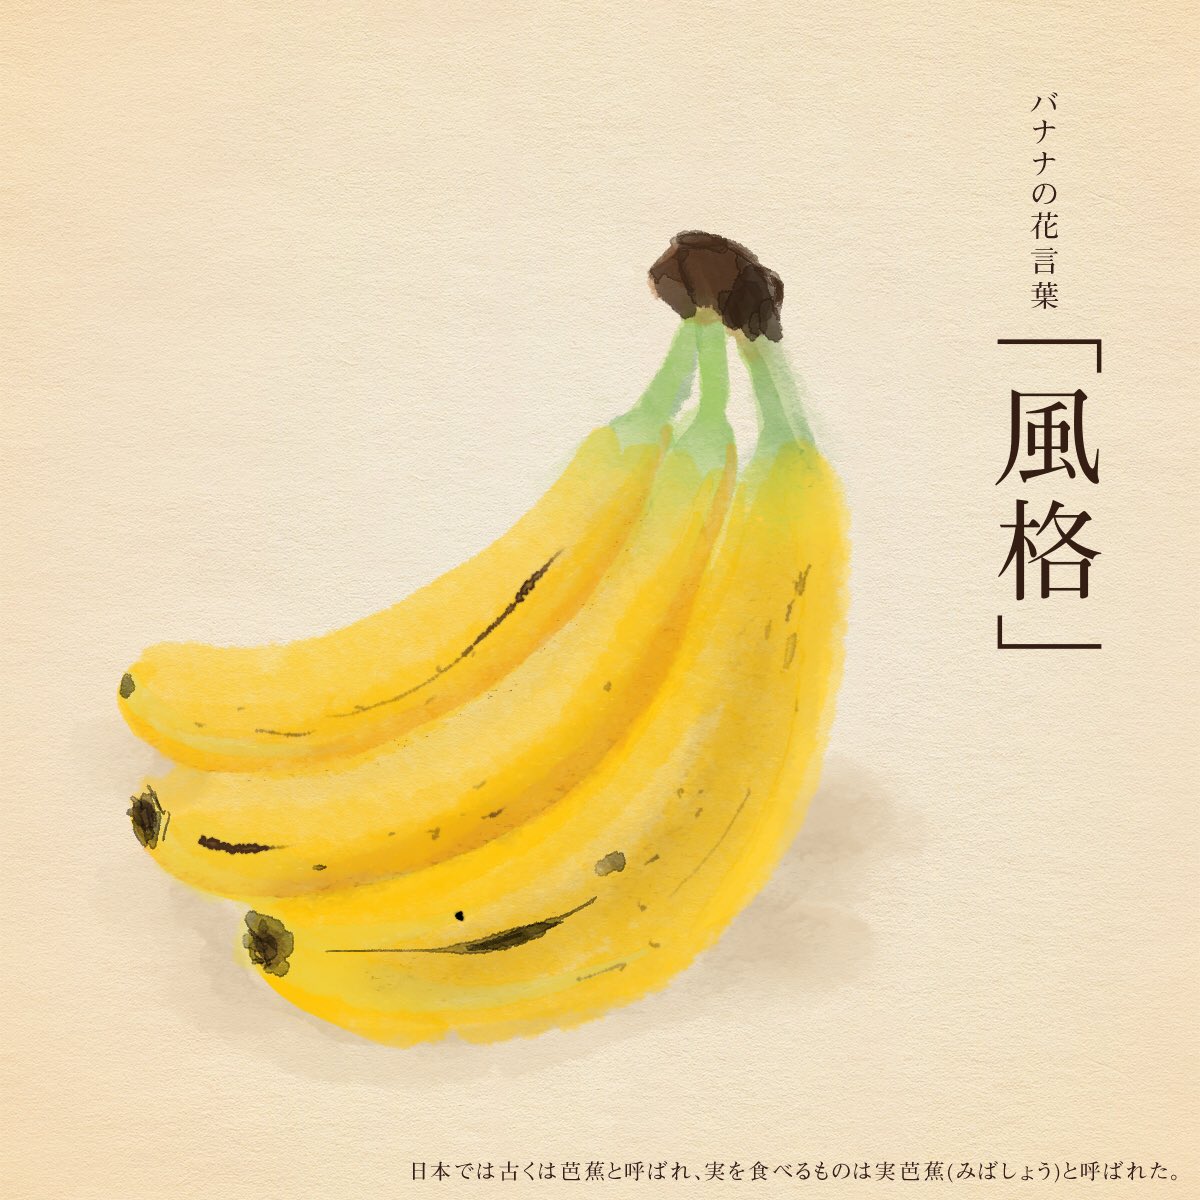 はな言葉 ウェディングドレス Di Twitter きょう8月7日は バナナの日 バ 8 ナナ 7 の語呂合せで日本バナナ輸入組合が制定 バナナの花言葉は 風格